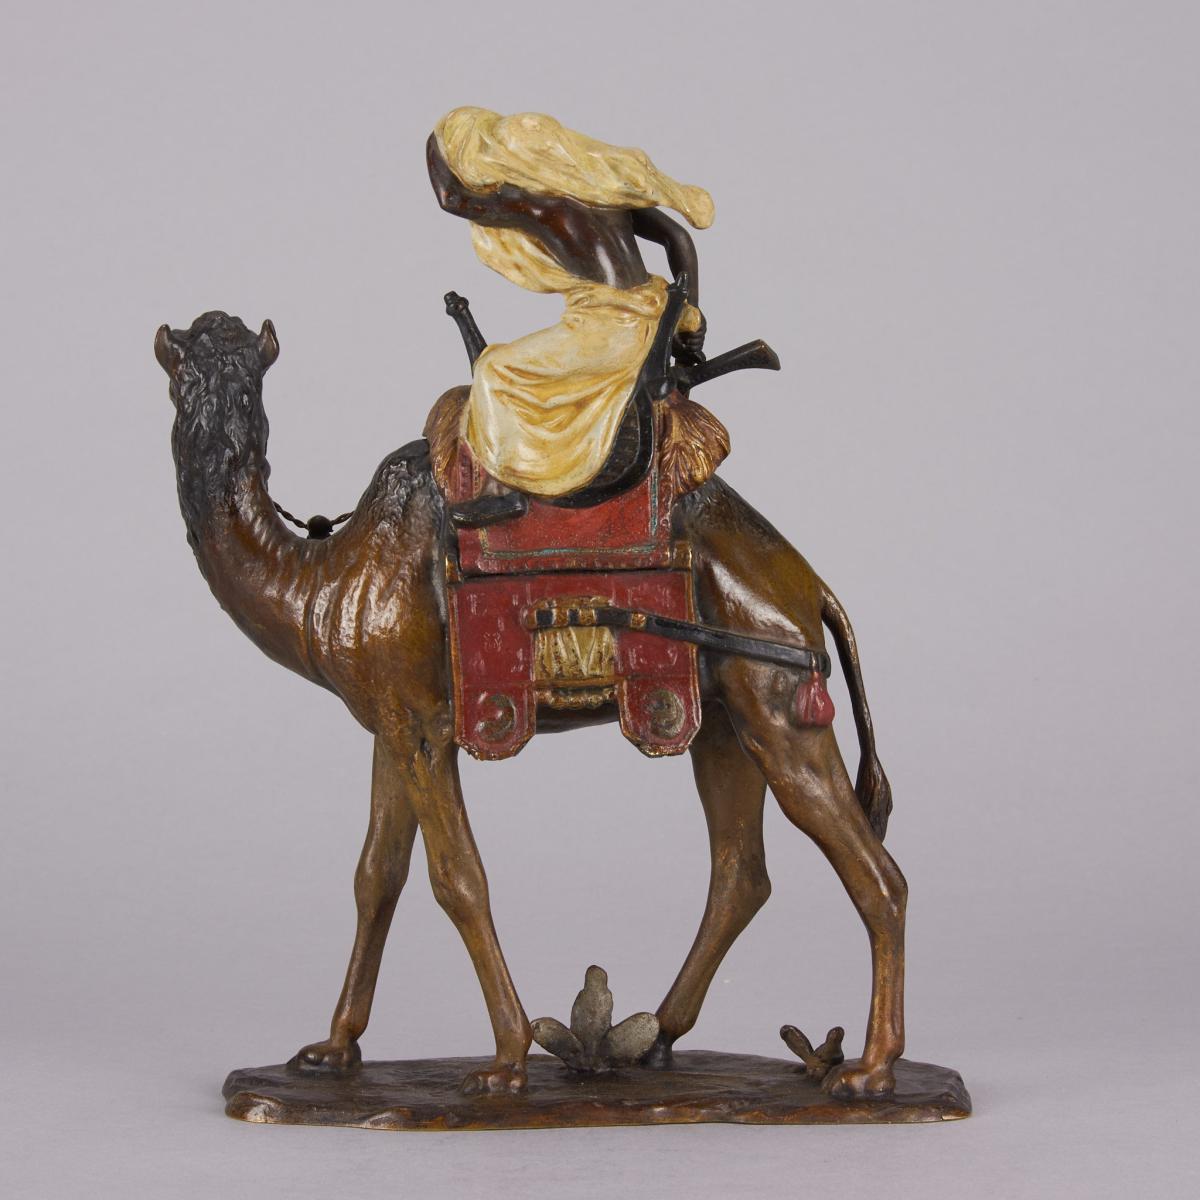 ‘Warrior on Camel” Vienna Bronze by Franz Bergman - circa 1900